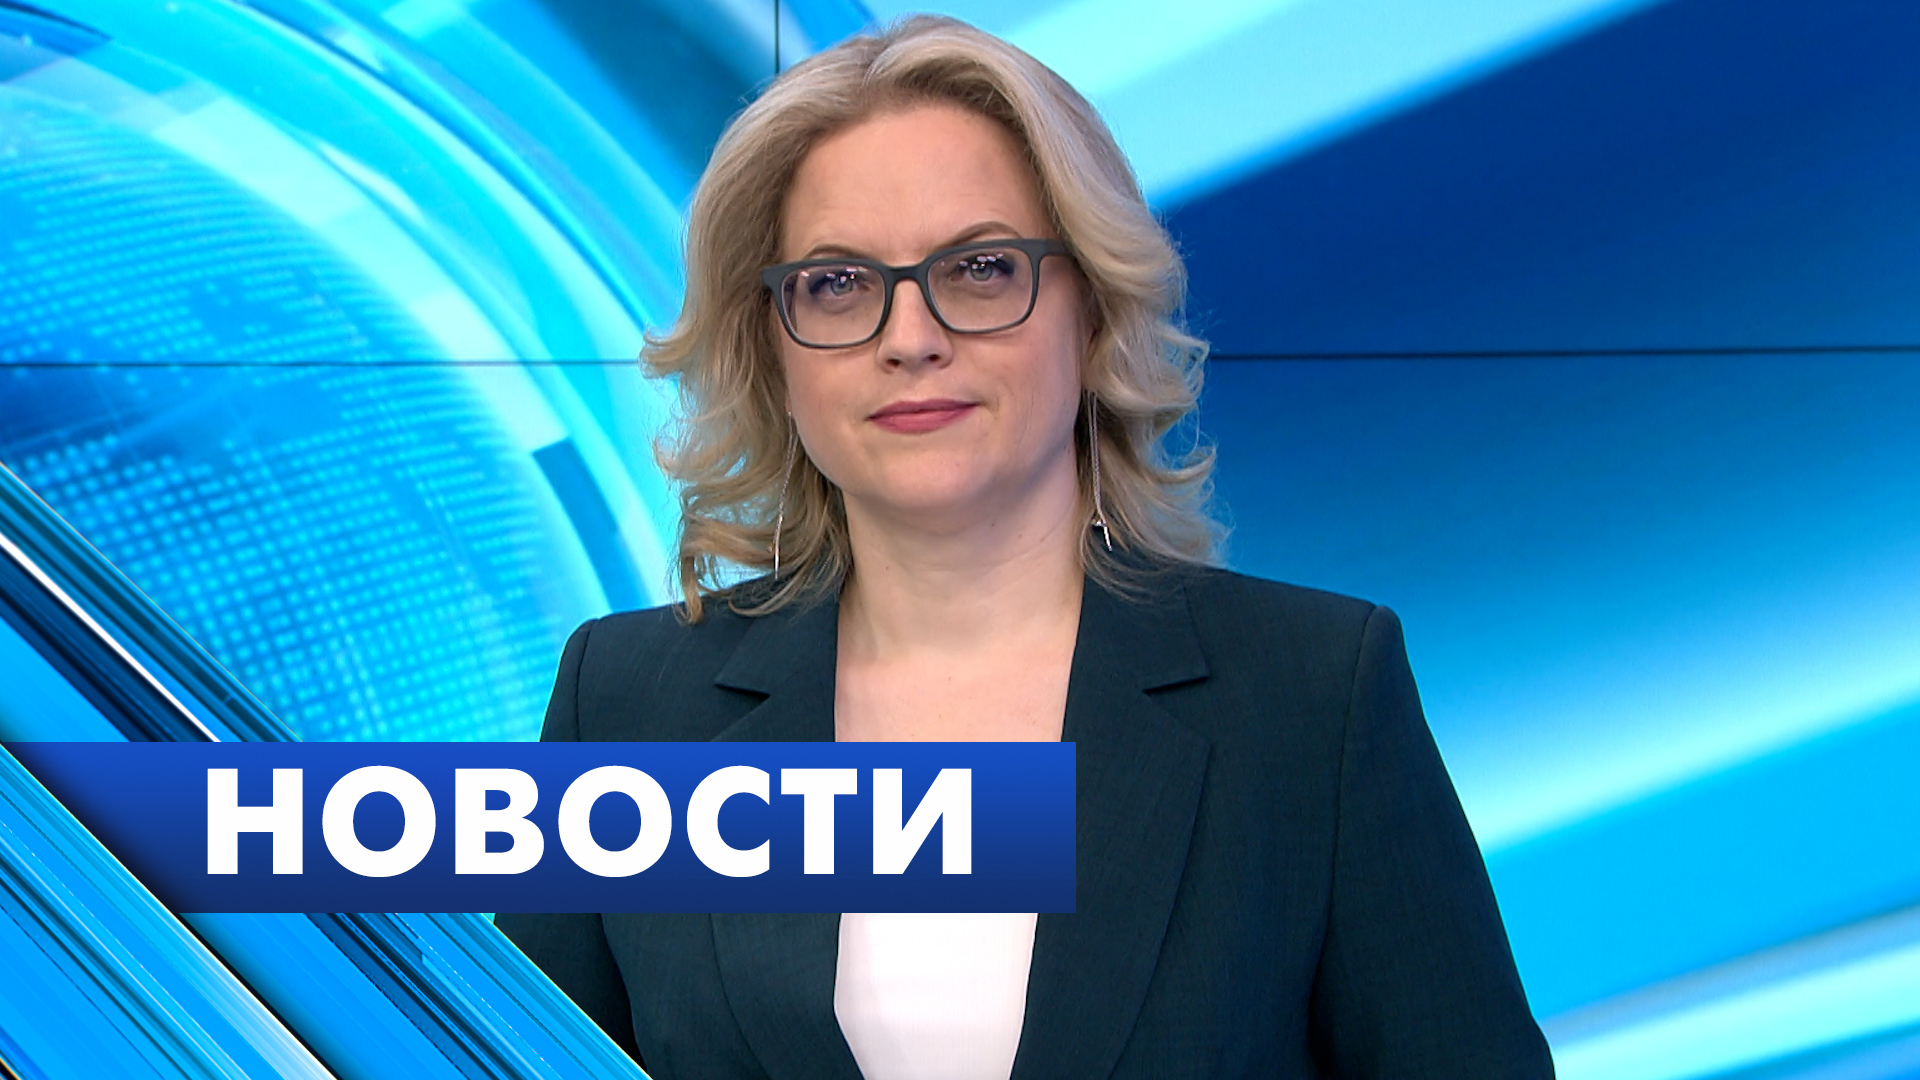 Главные новости Петербурга / 6 апреля